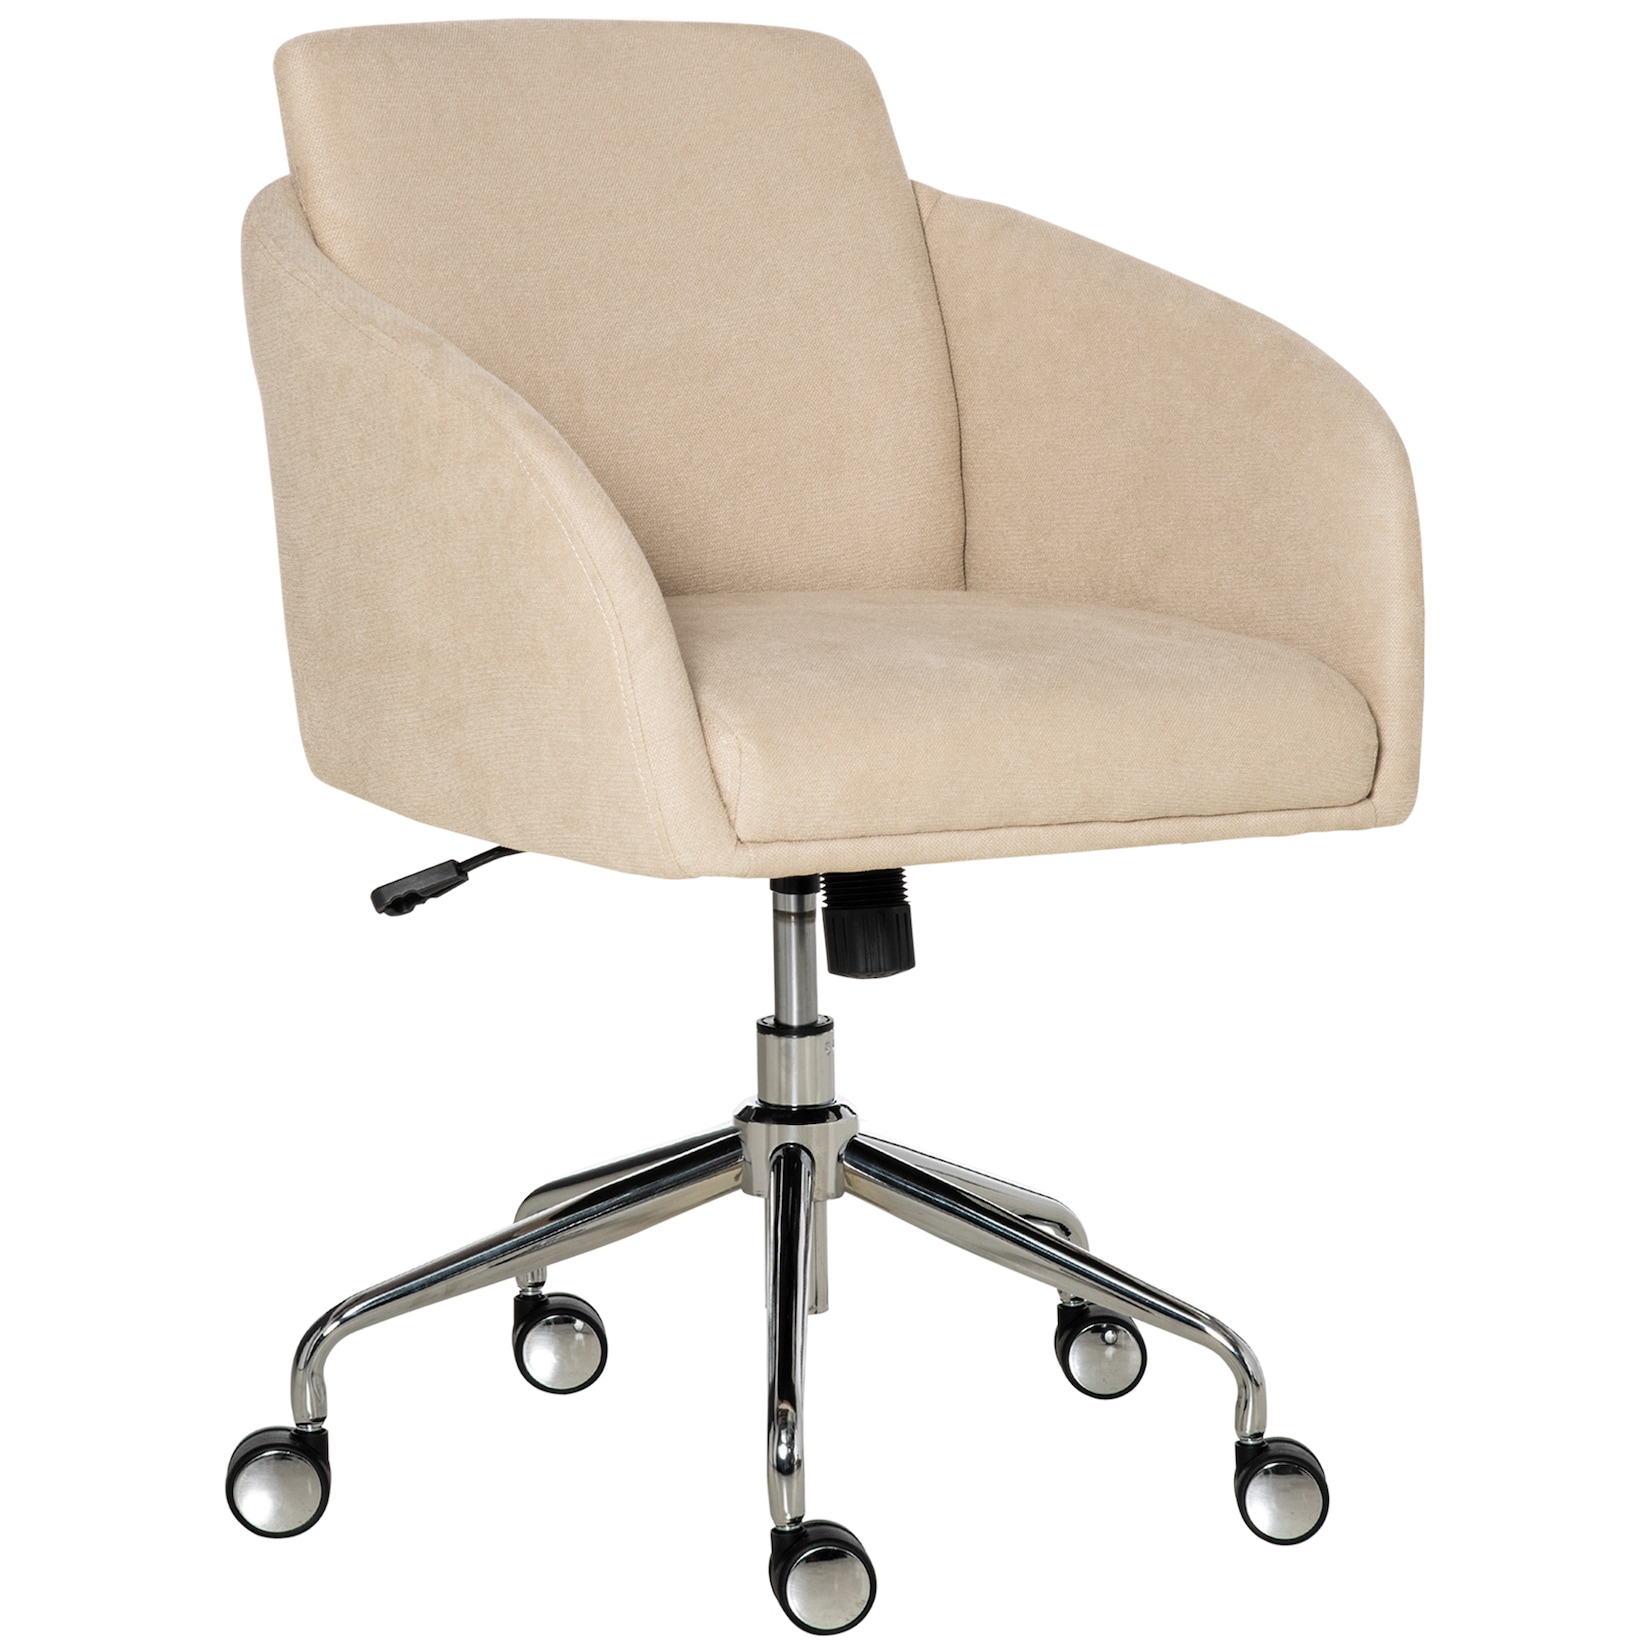 Vinsetto Bürostuhl mit einstellbarer Höhe und 360° Drehrollen beige 64L x 63,5T x 90,8H cm   schreibtischstuhl bürostuhl stuhl